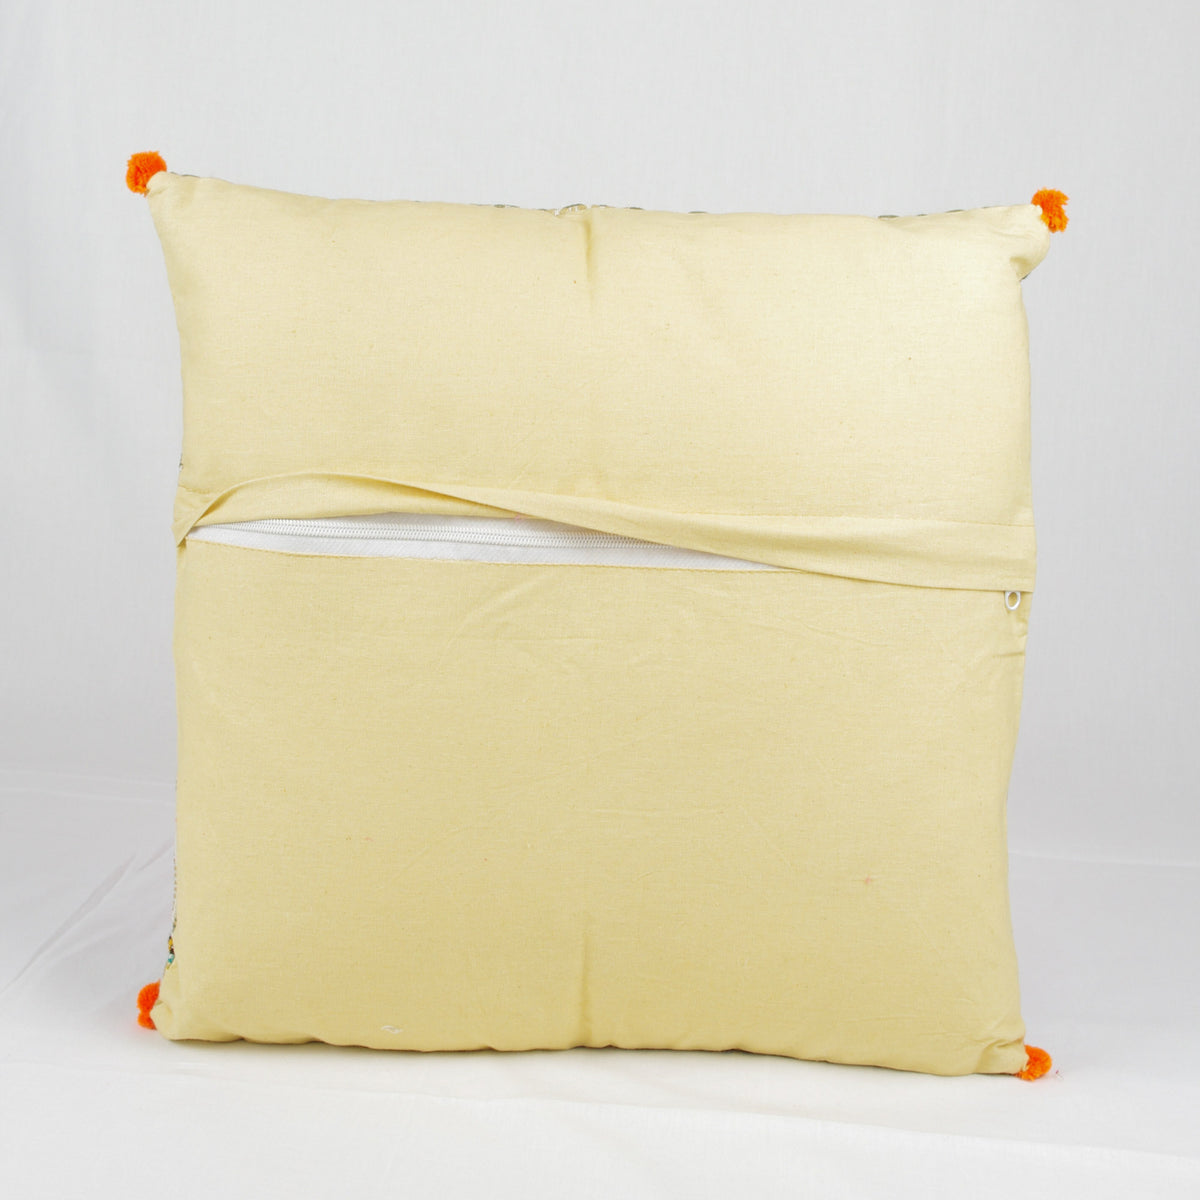 Bohemian Handloom Cotton Cushion Cover - Beige / Cream